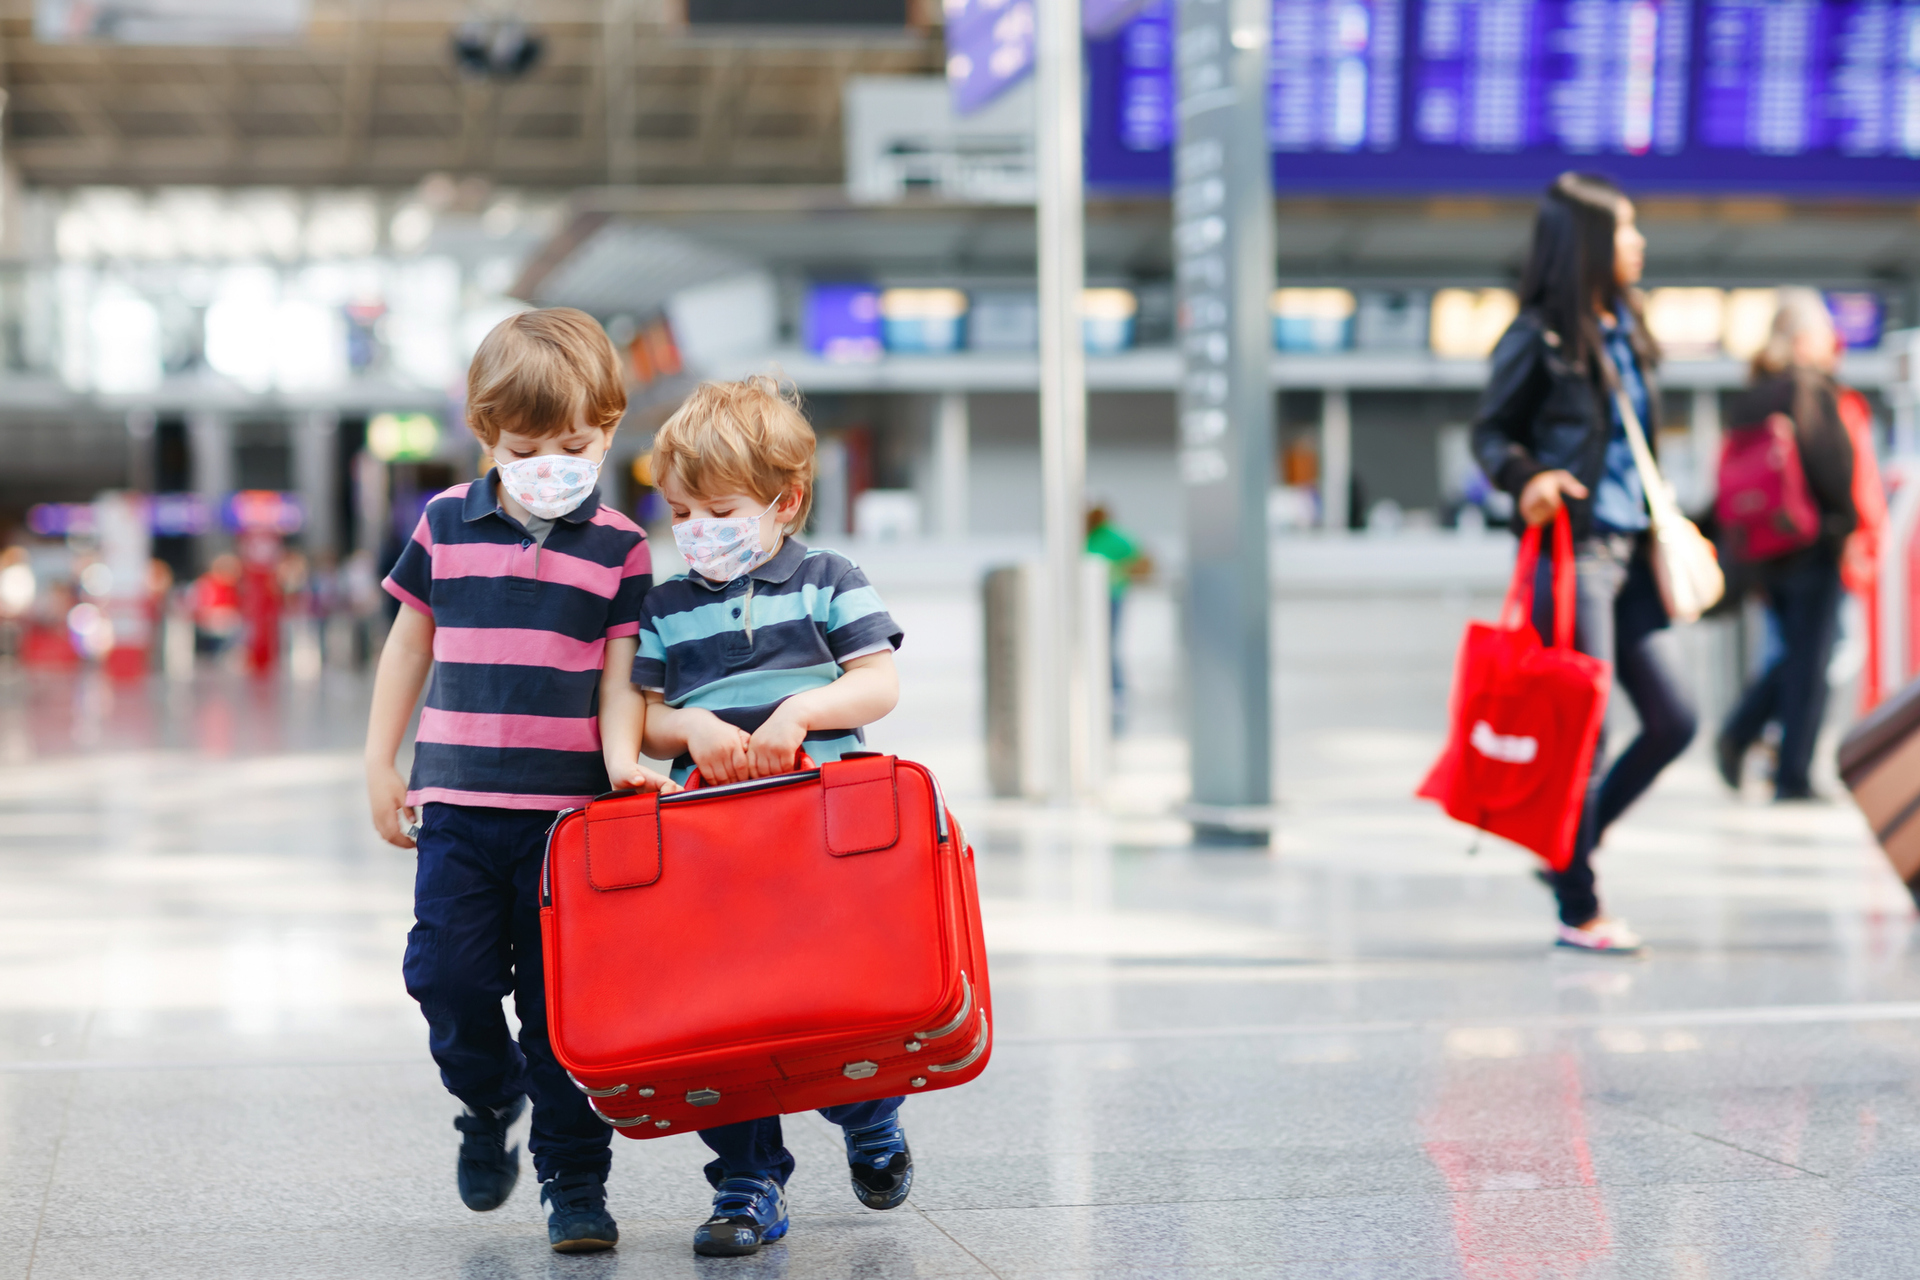 Autorização para menores viajarem sozinhos passará a ser feita pela web